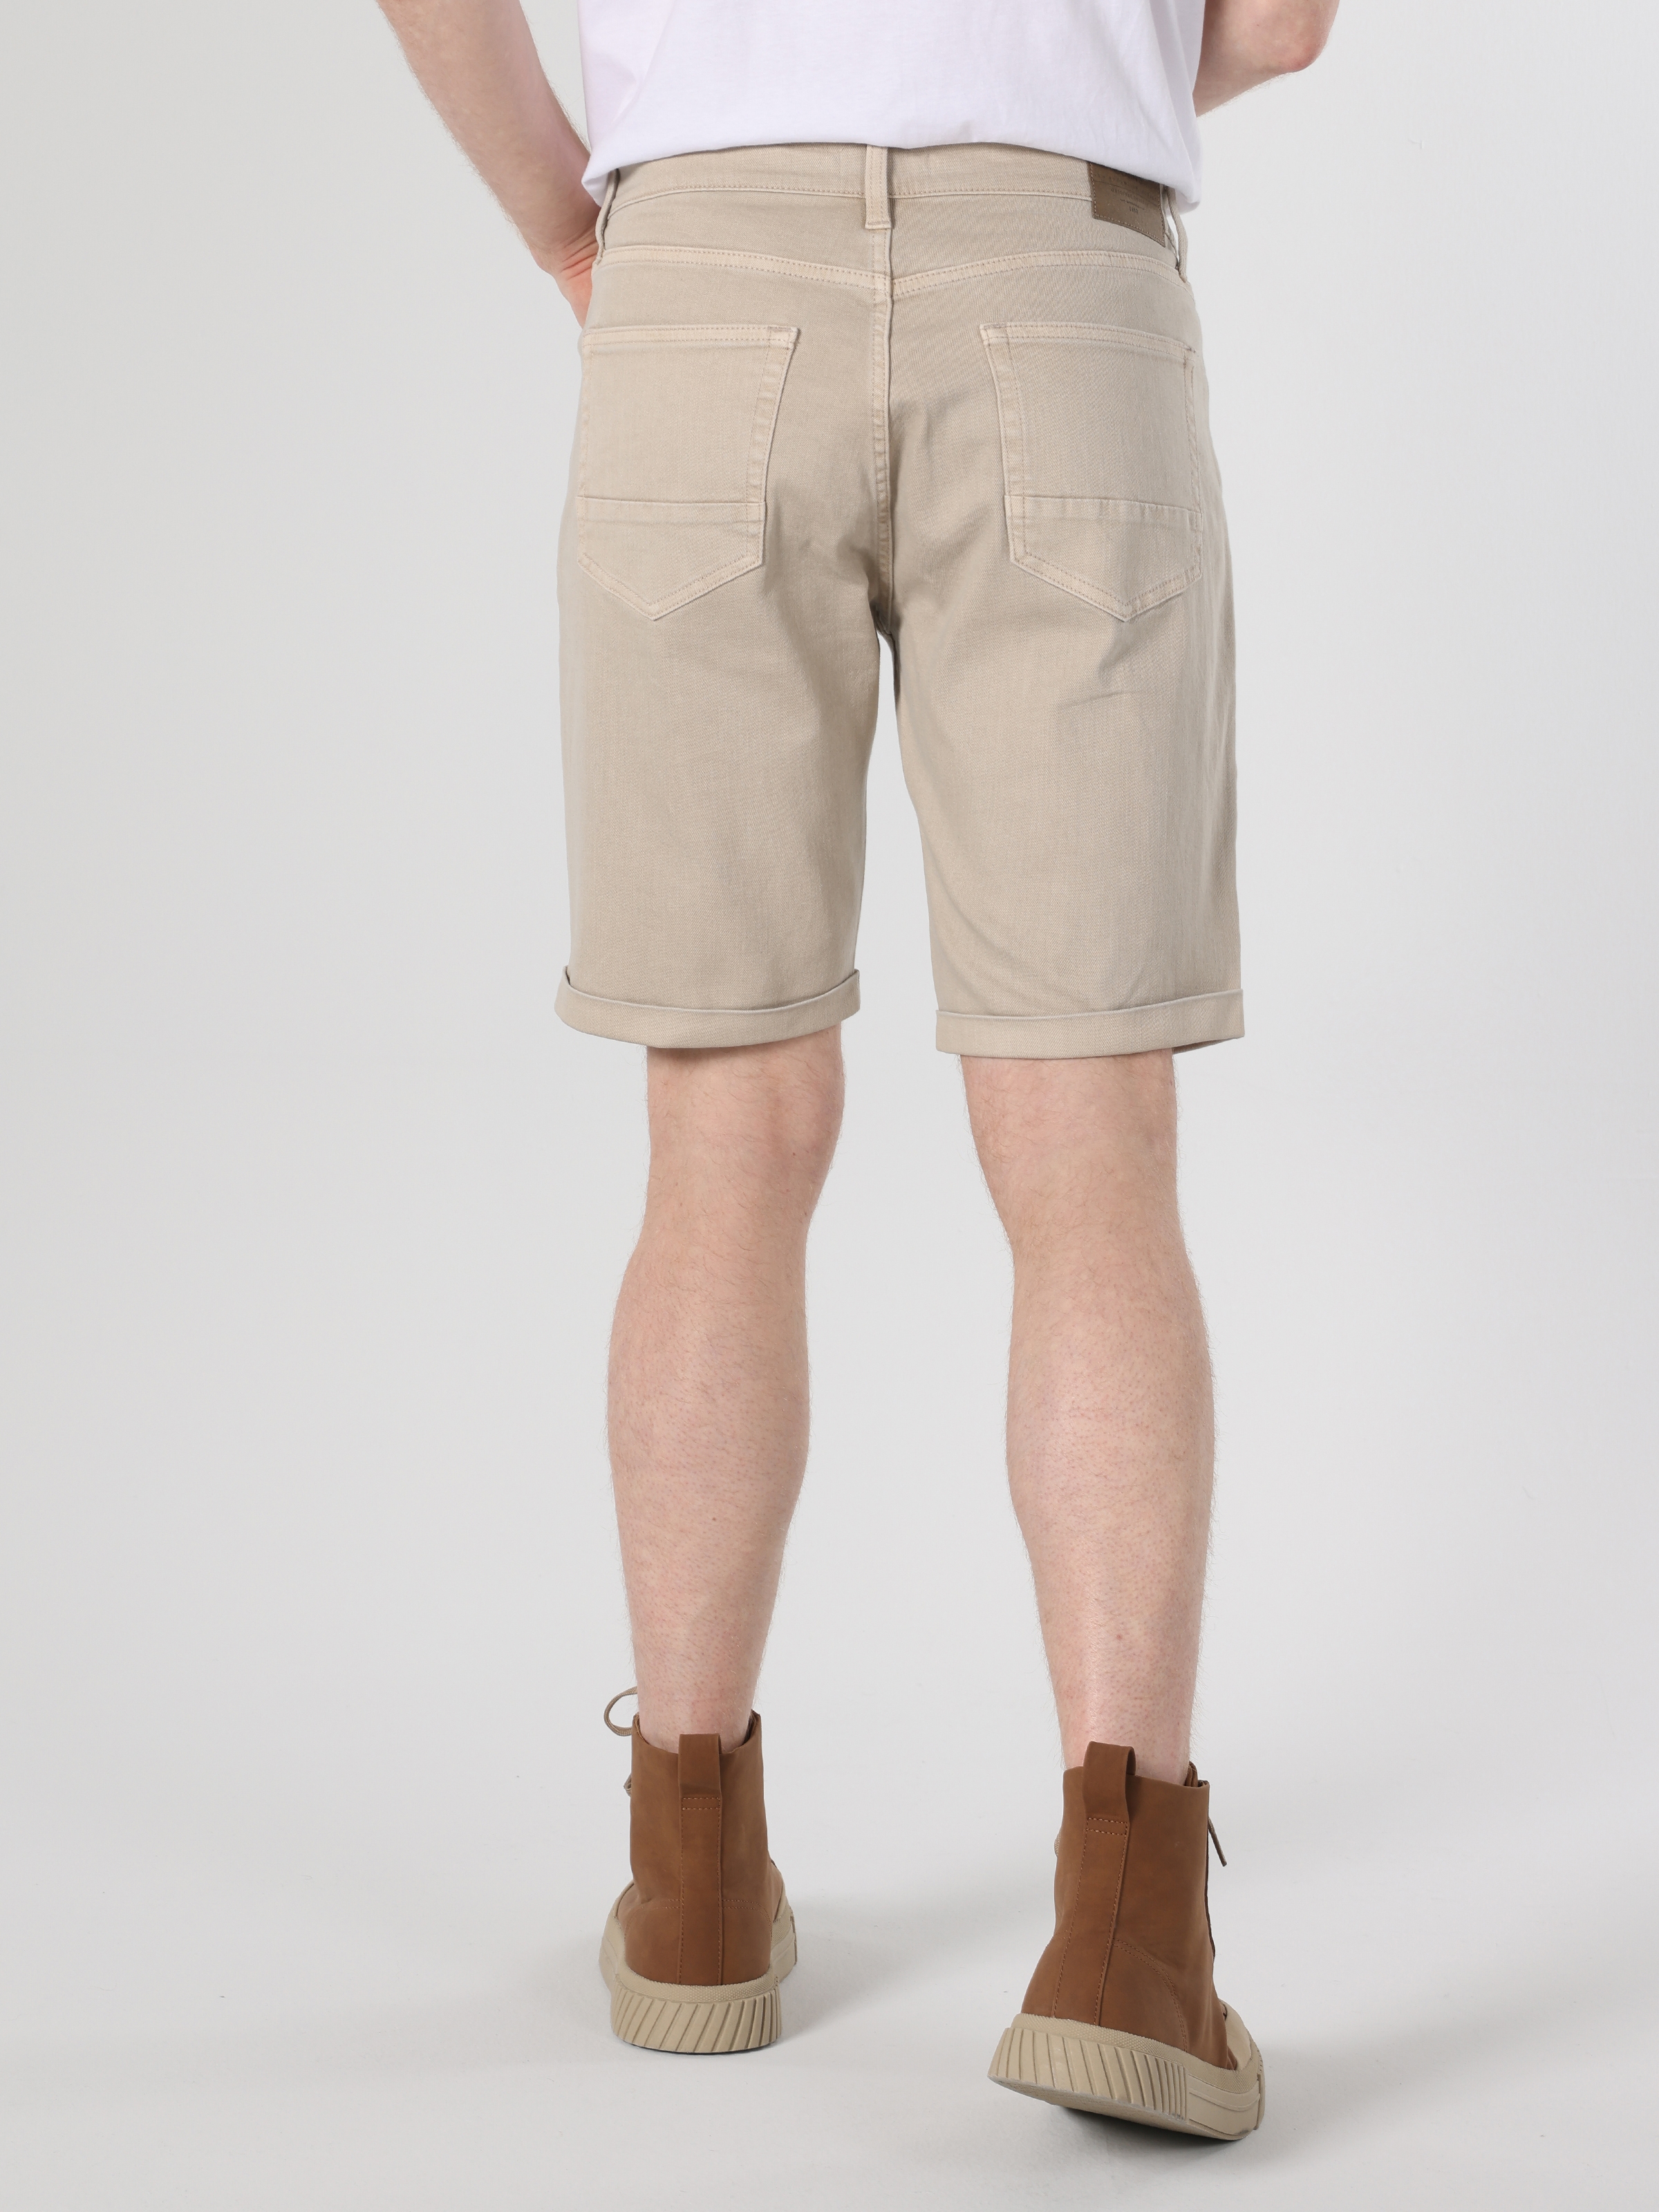 Afișați detalii pentru Short / Pantaloni Scurti De Barbati Bej Regular Fit 